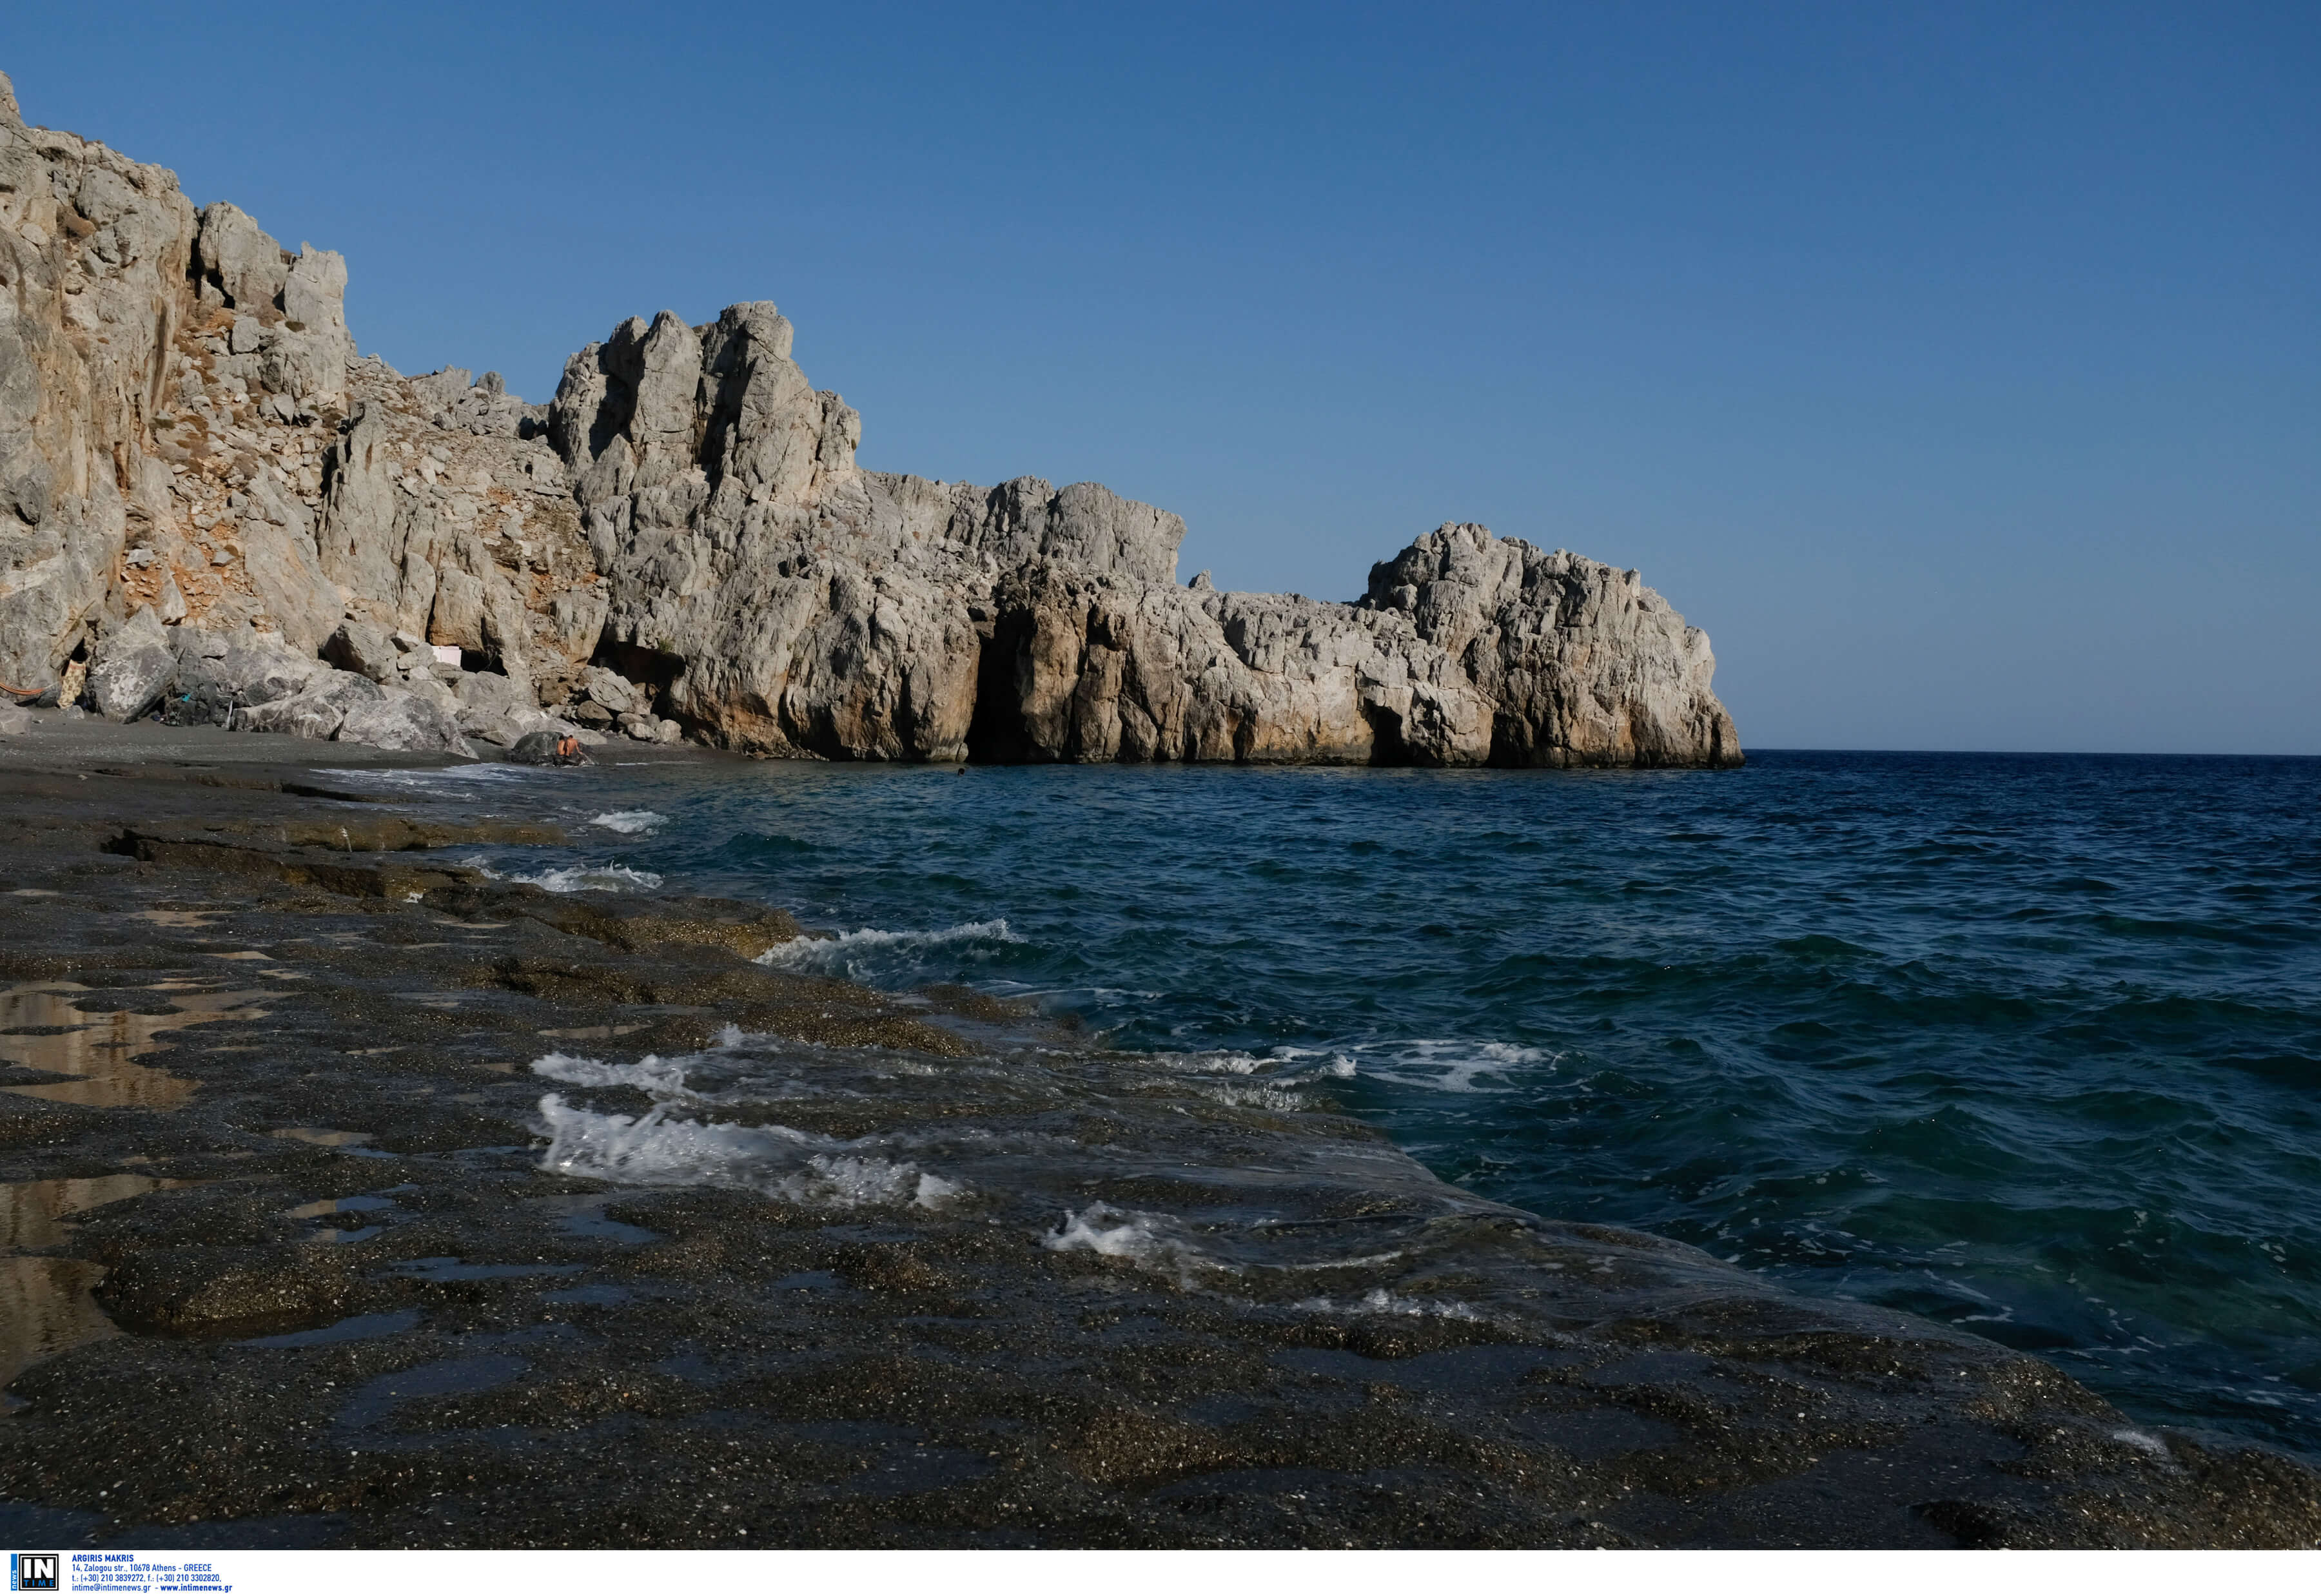 Υπογράφονται αύριο οι συμβάσεις για έρευνες υδρογονανθράκων δυτικά και νοτιοδυτικά της Κρήτης